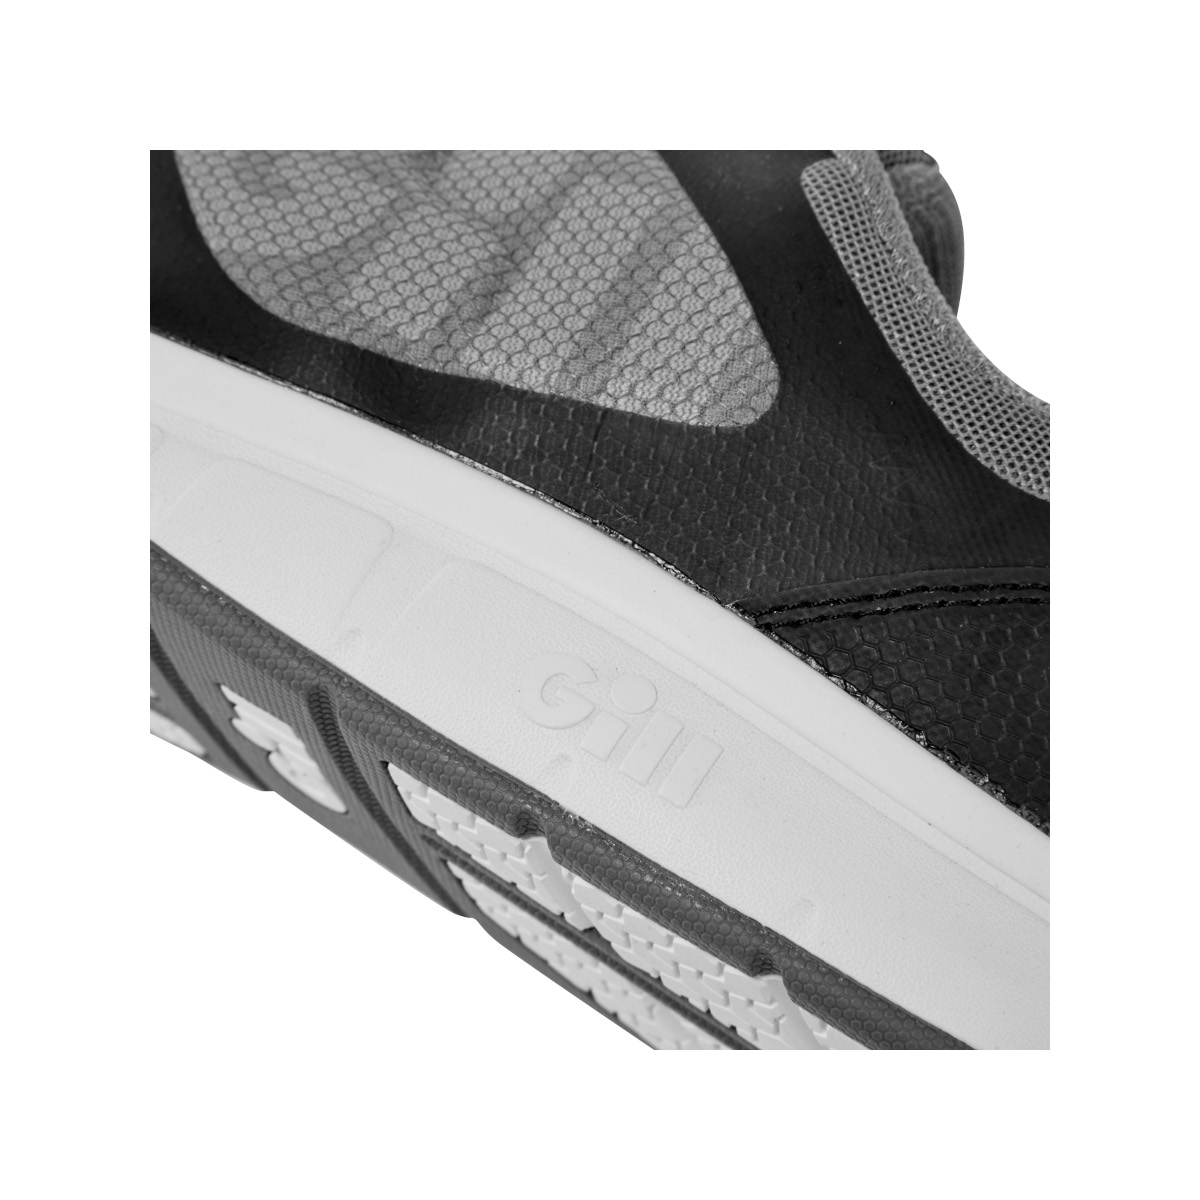 Gill Mawgan chaussure de voile, unisexe - noir/gris, pointure 46